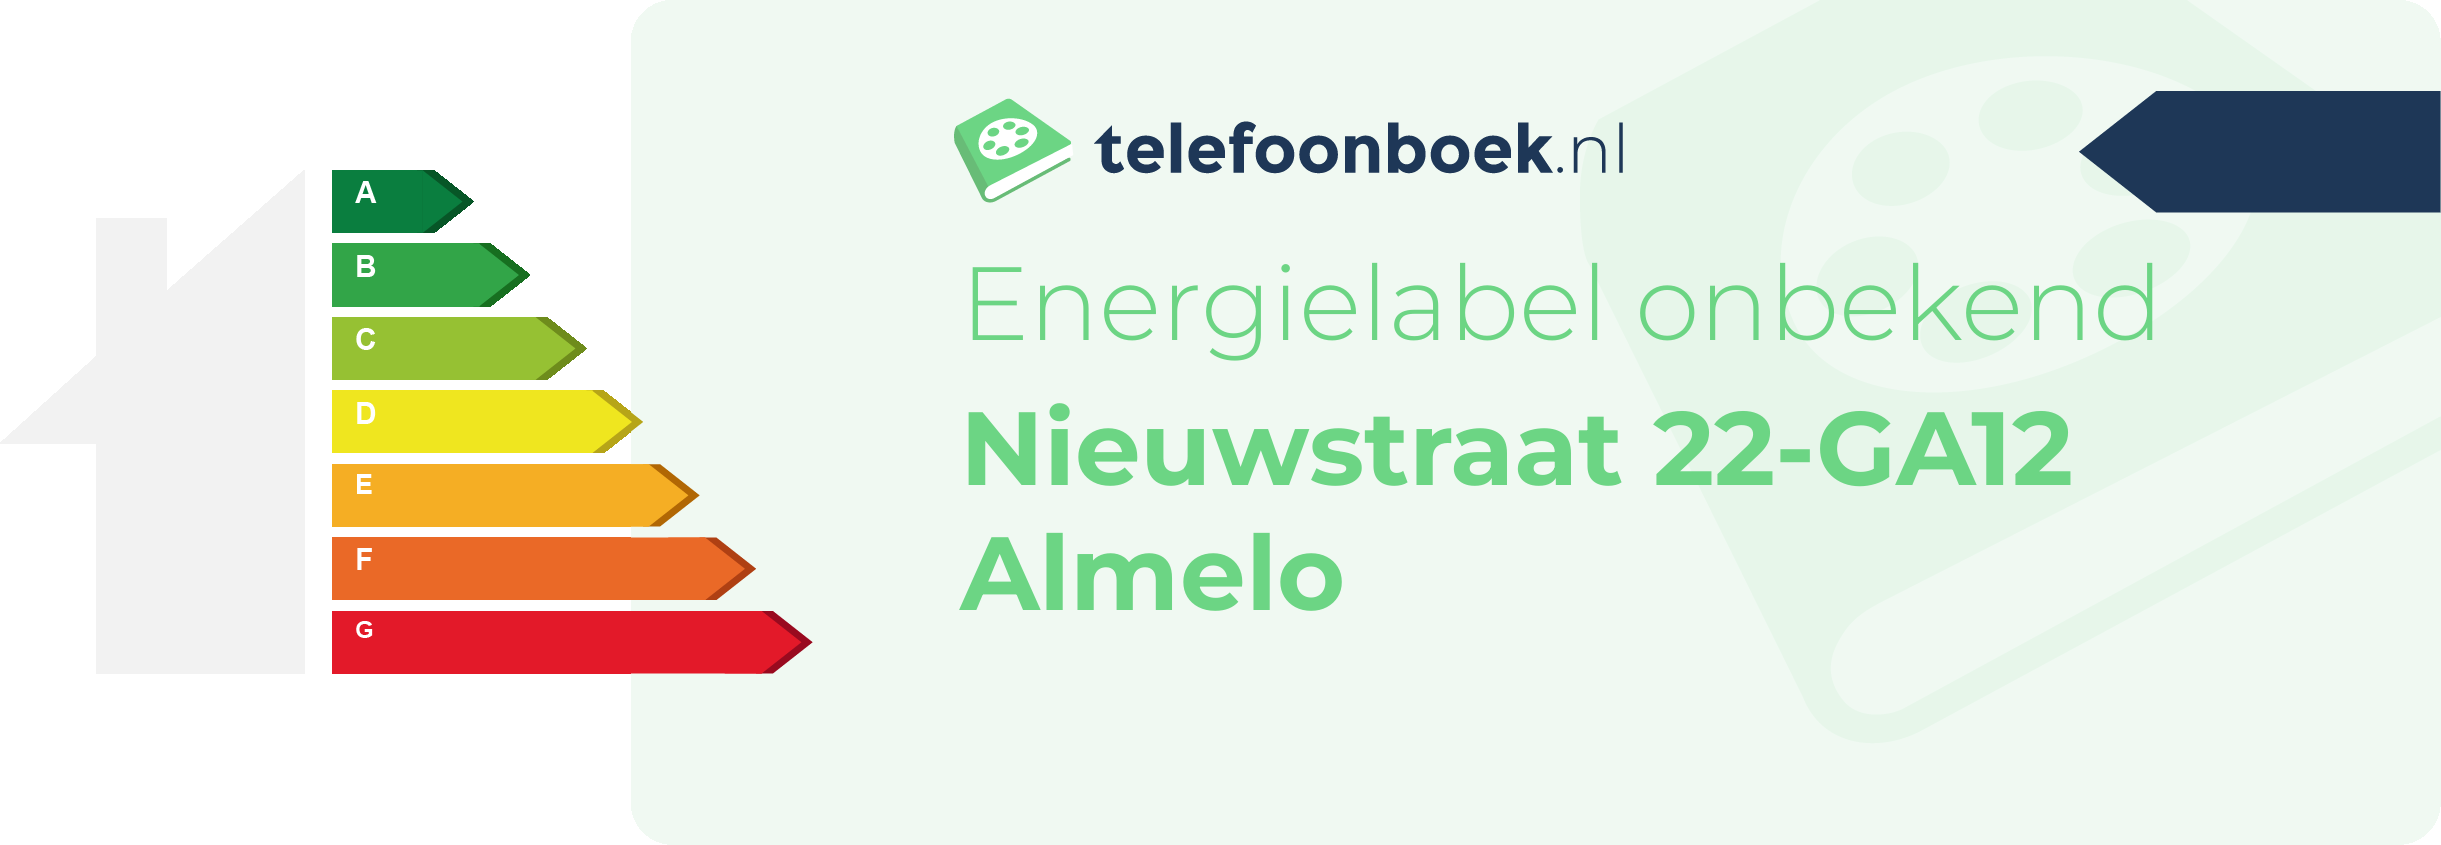 Energielabel Nieuwstraat 22-GA12 Almelo